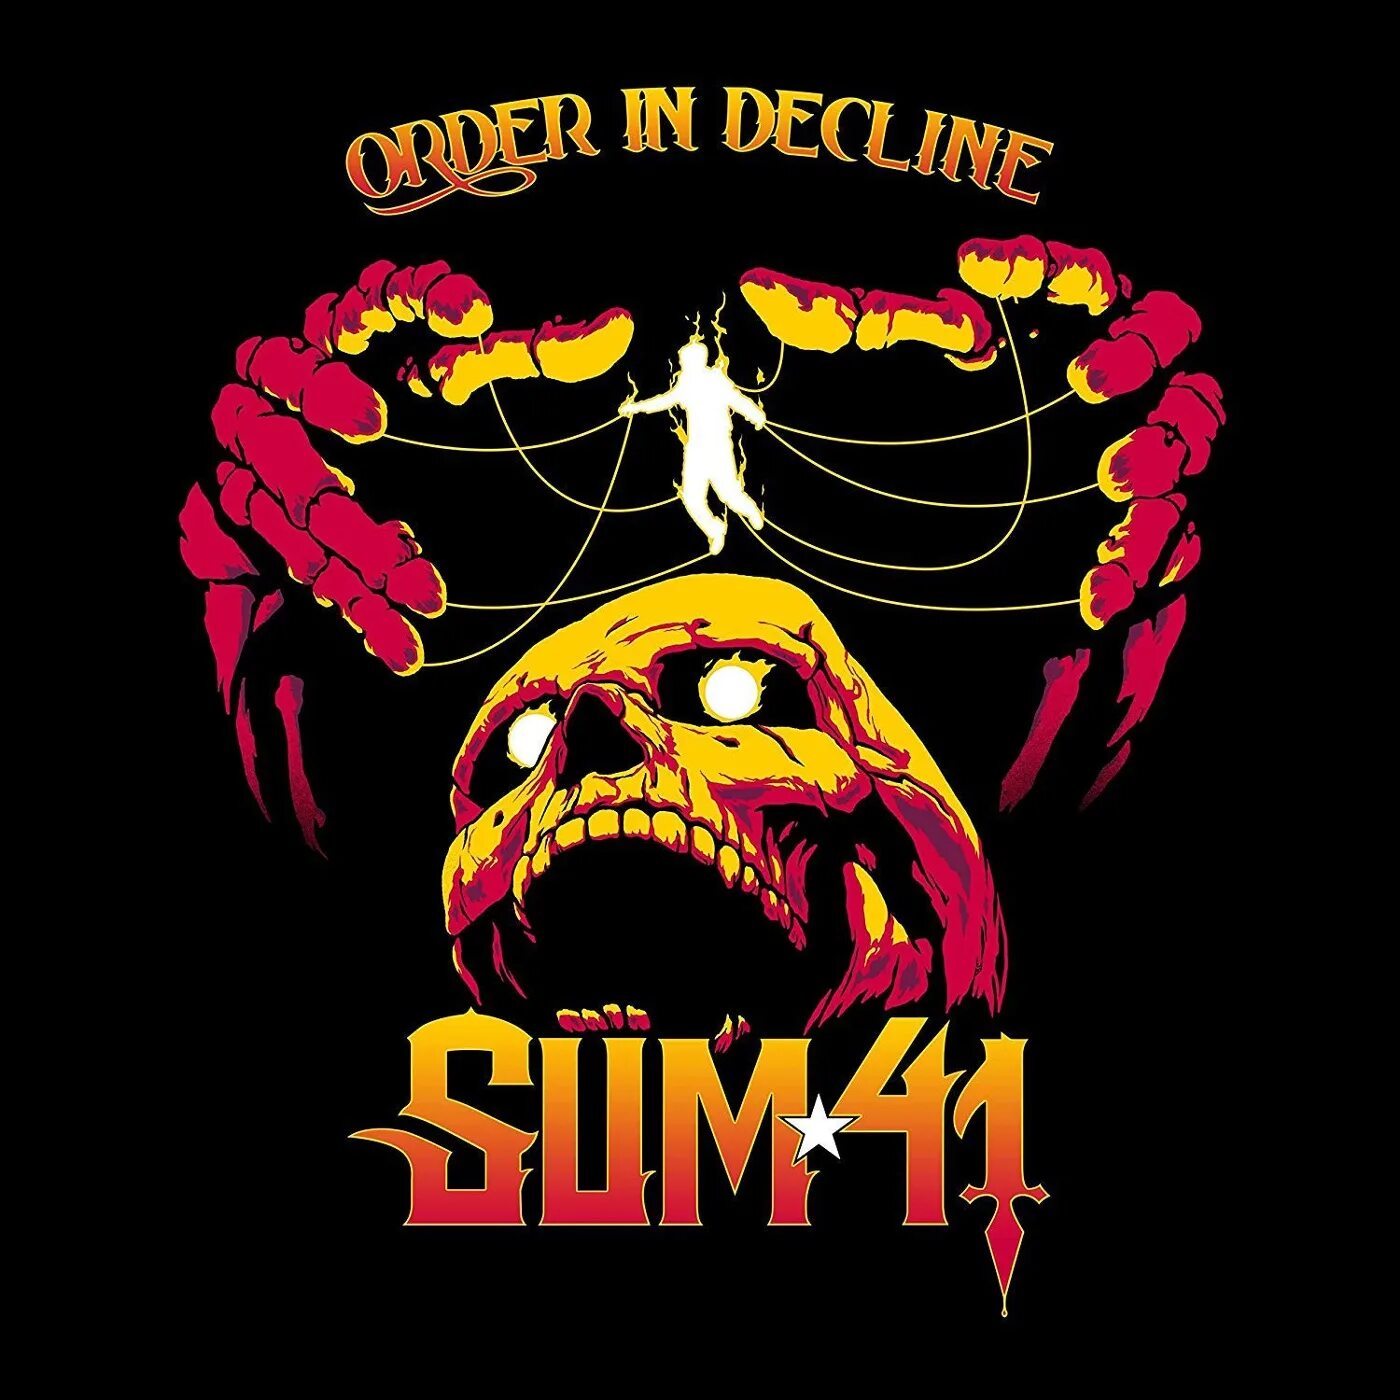 Sum order. Sum 41 обложки. Order in decline обложка. Sum 41 альбомы. Сам 41 альбомы.